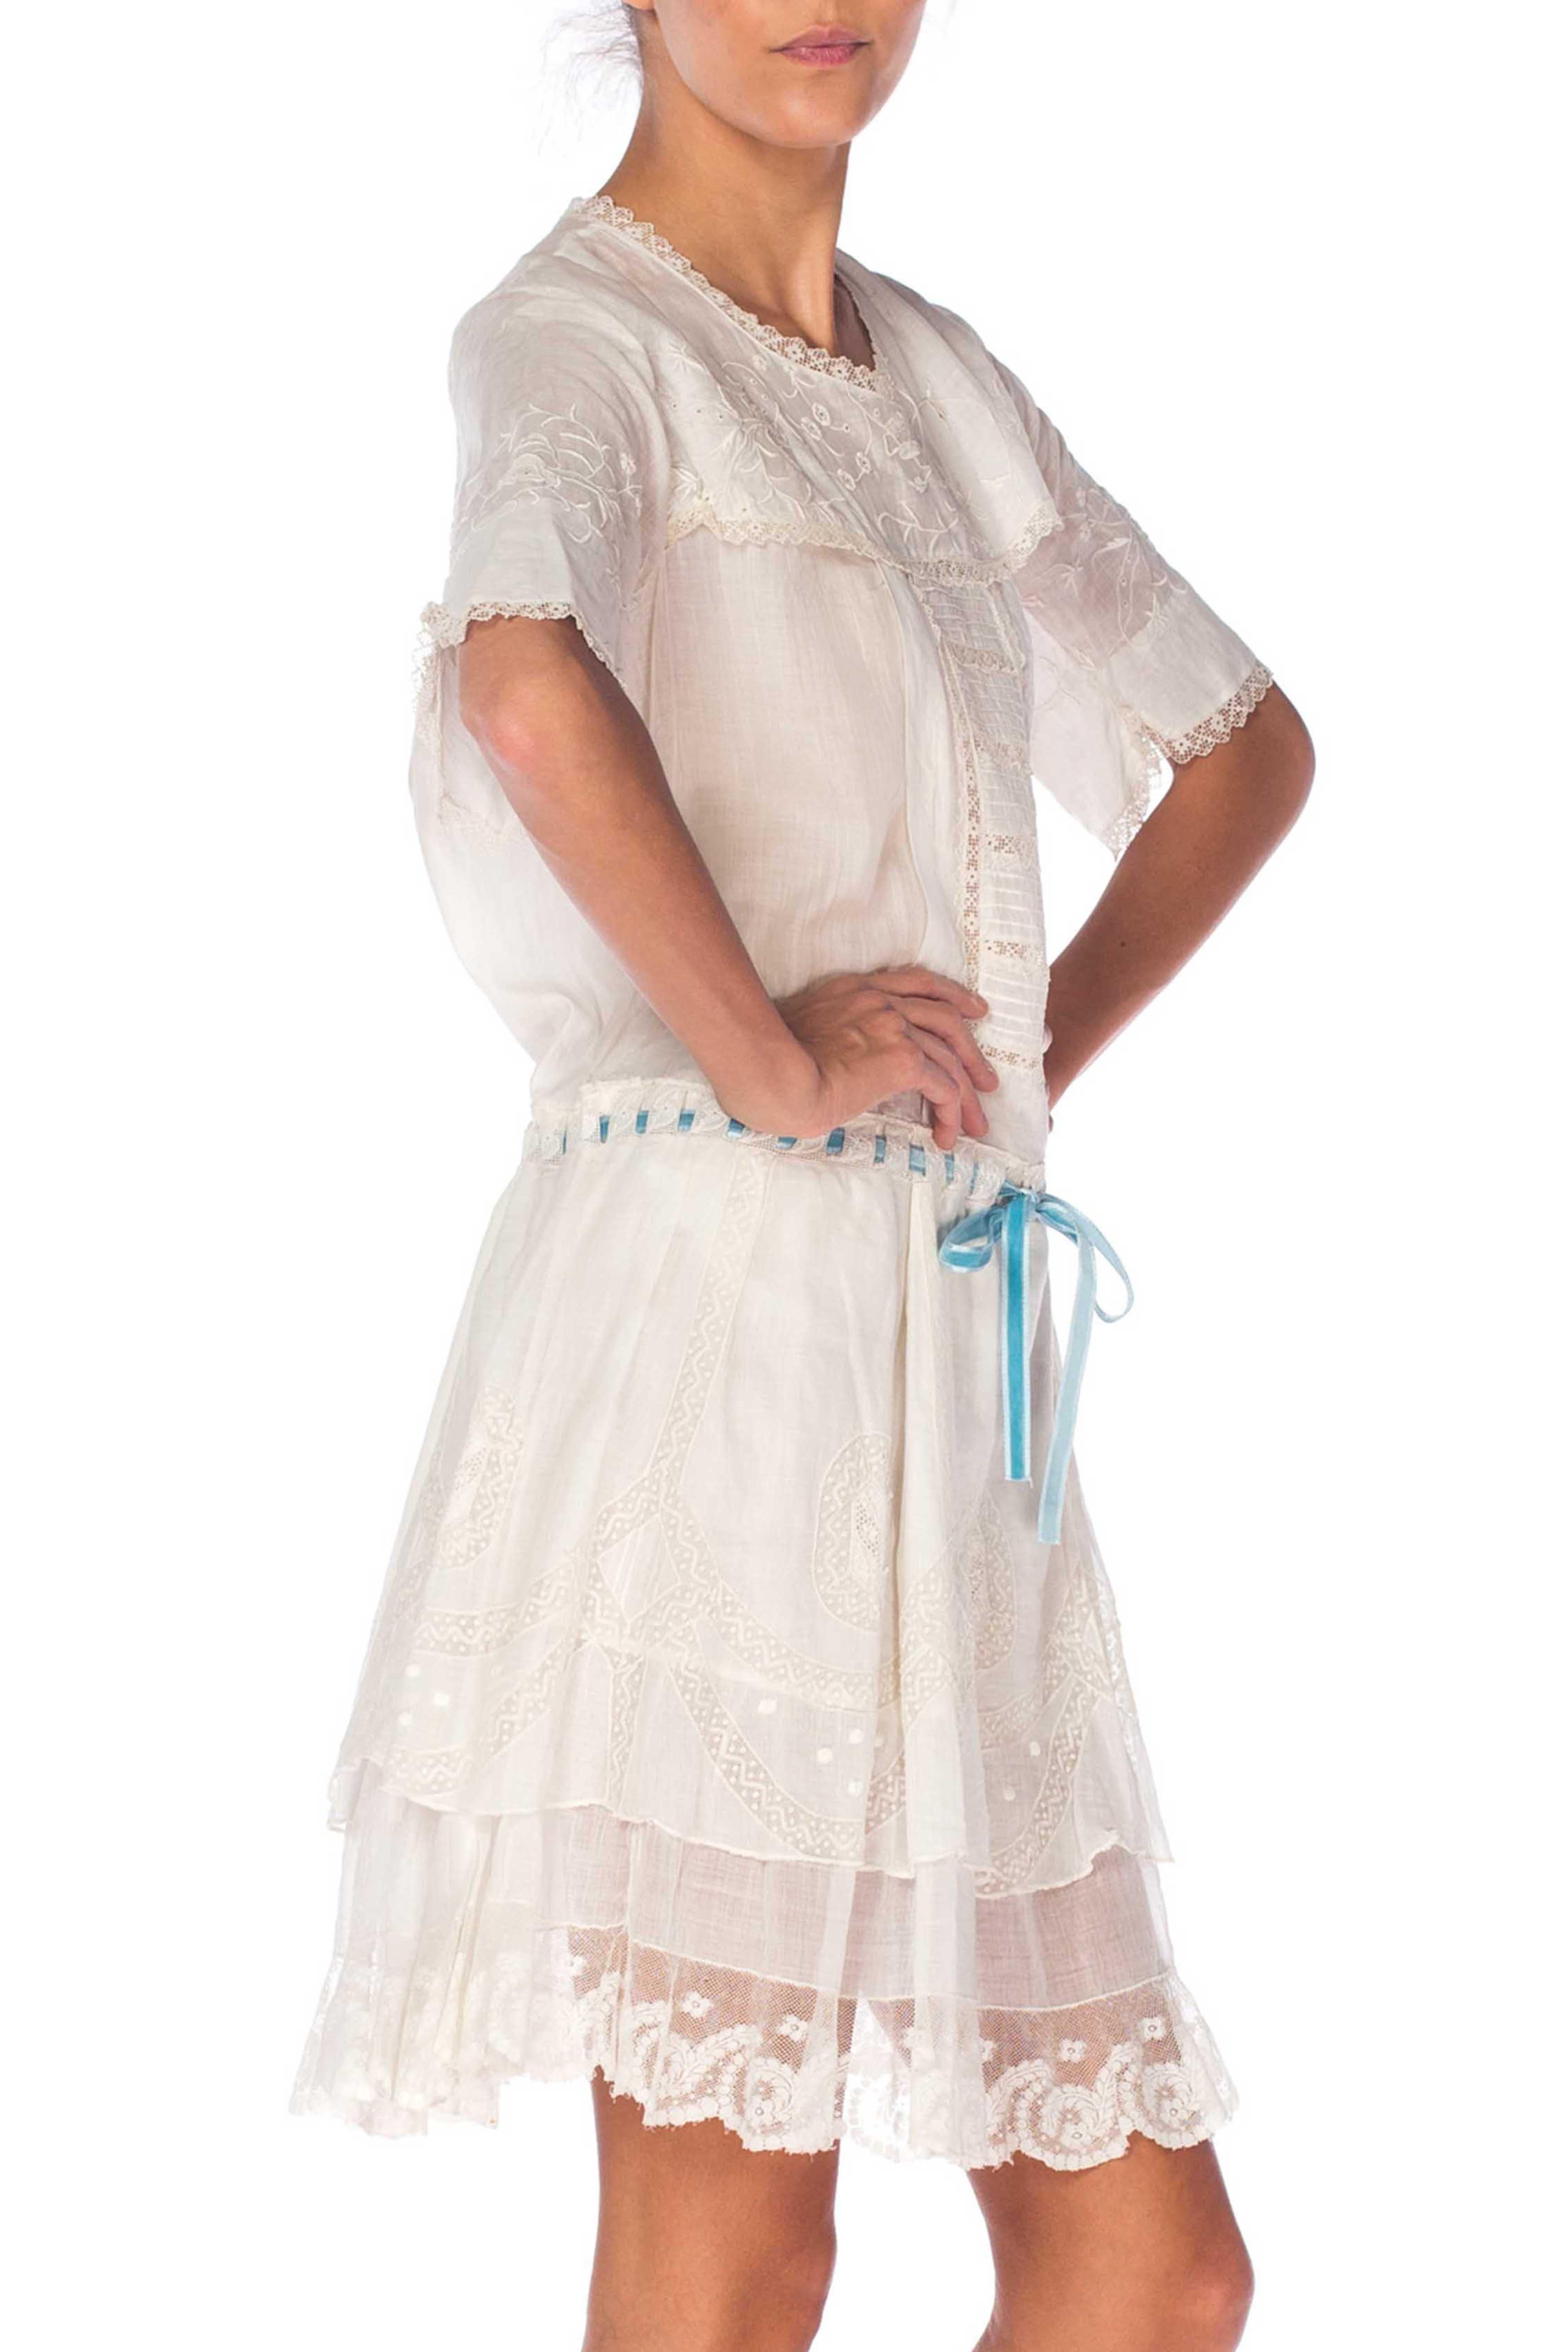 Robe blanche édouardienne en voile de coton biologique brodé à la main pour jeunes filles avec dentelle et ruban à la taille